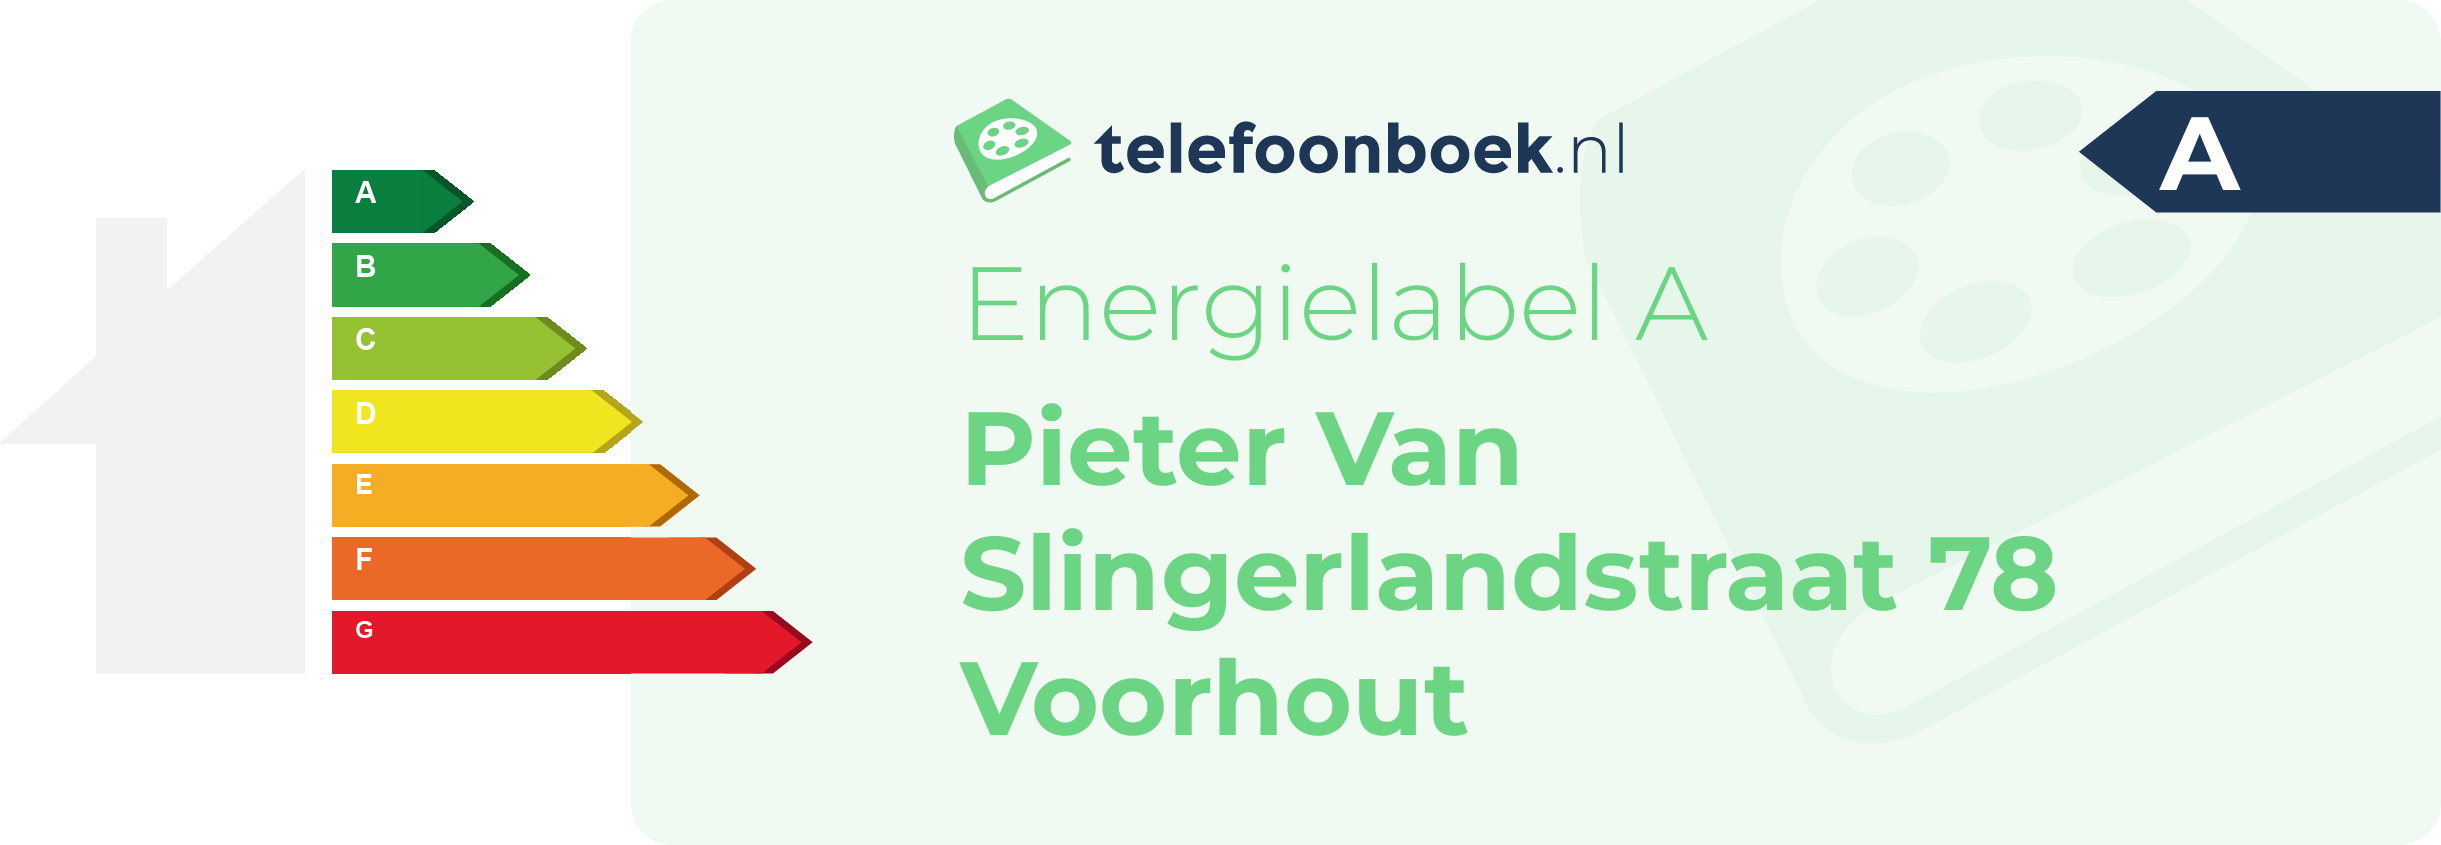 Energielabel Pieter Van Slingerlandstraat 78 Voorhout